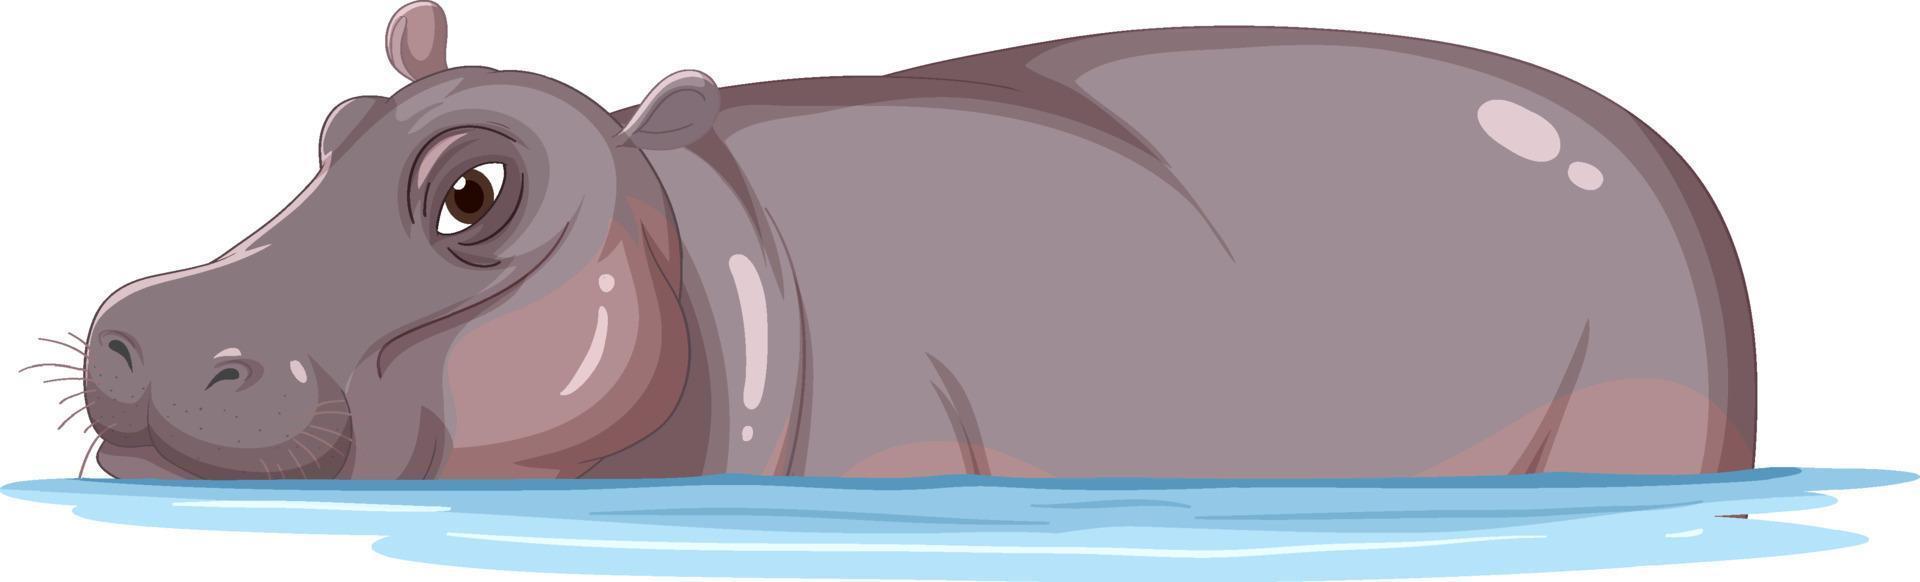 hipopótamo en el agua vector